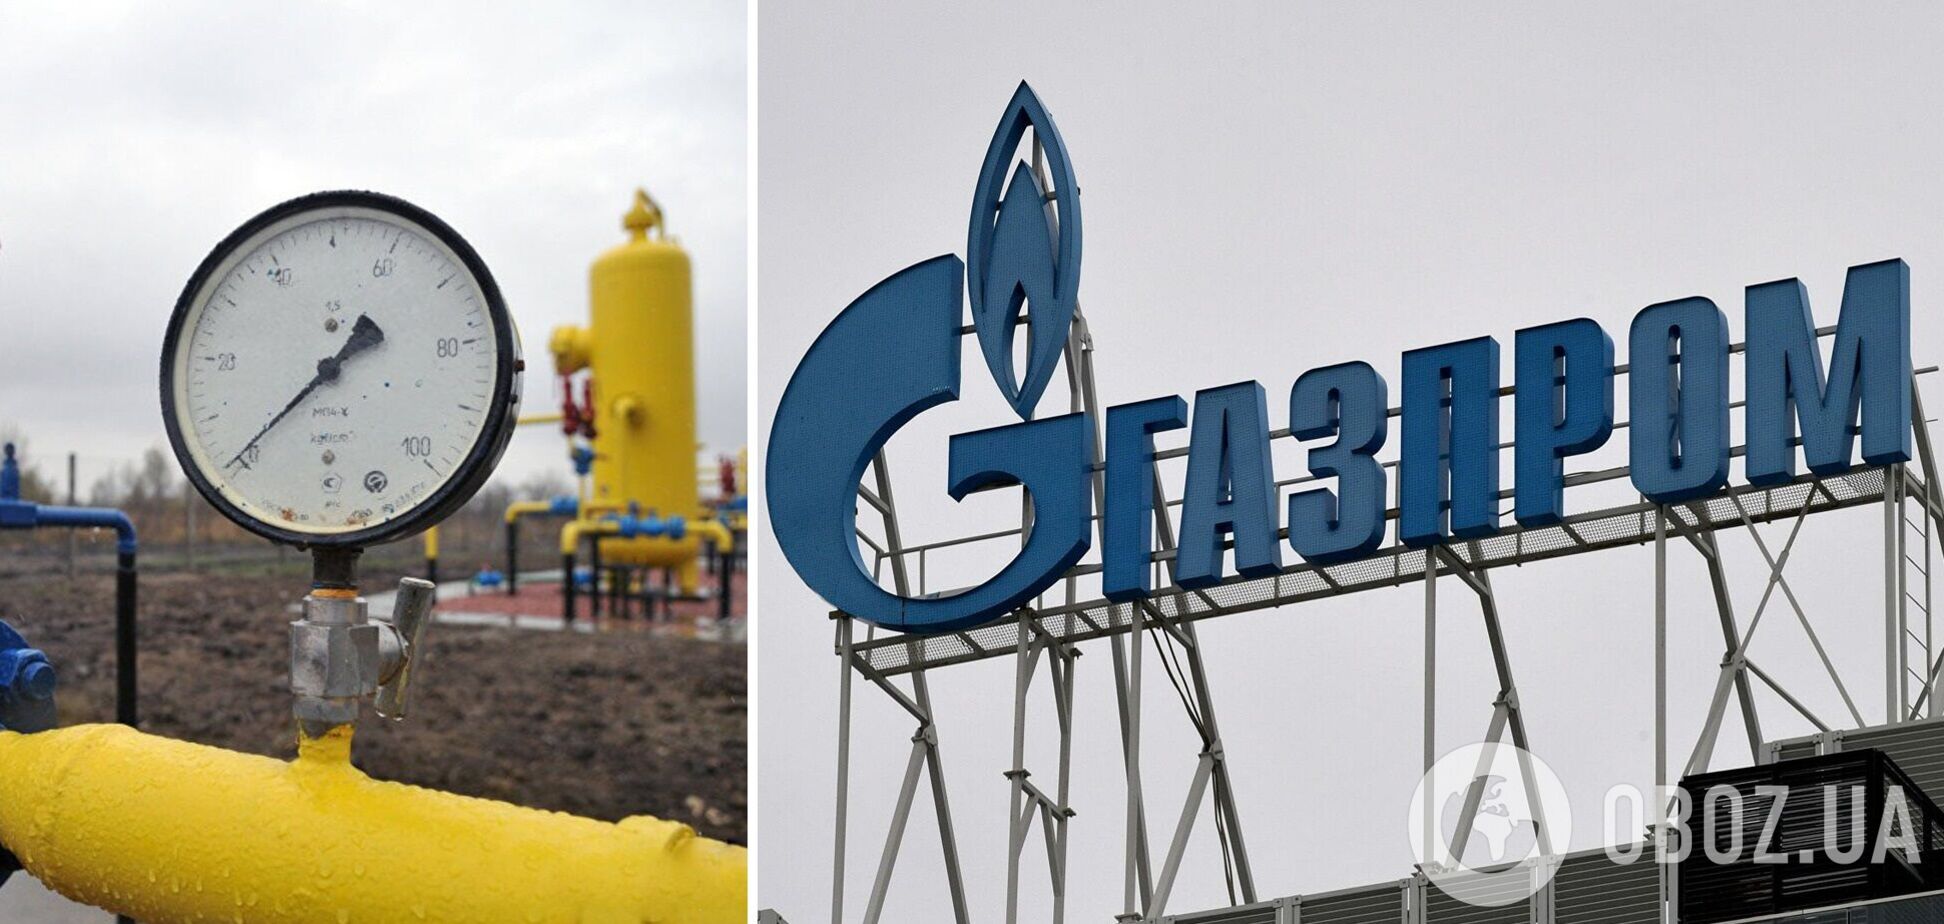 Остановить поставки газа Молдове 'Газпром' может уже 24 ноября